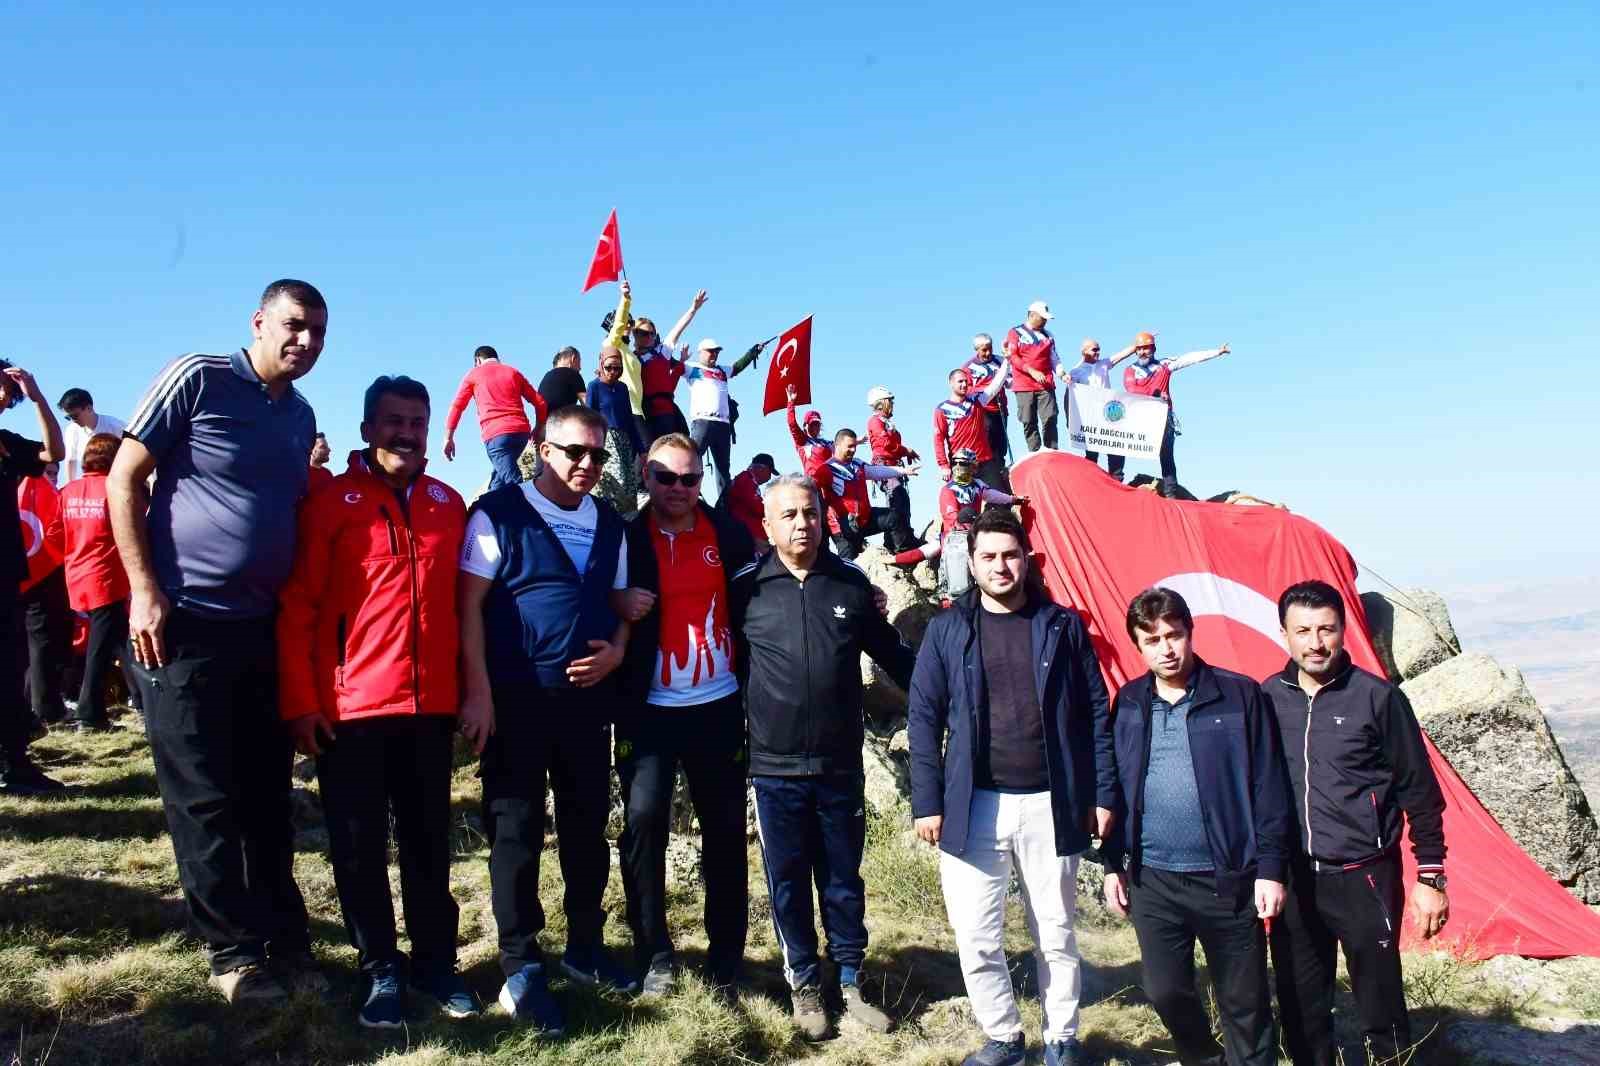 Kırıkkale’de Cumhuriyet’in 100. yılına özel yürüyüş